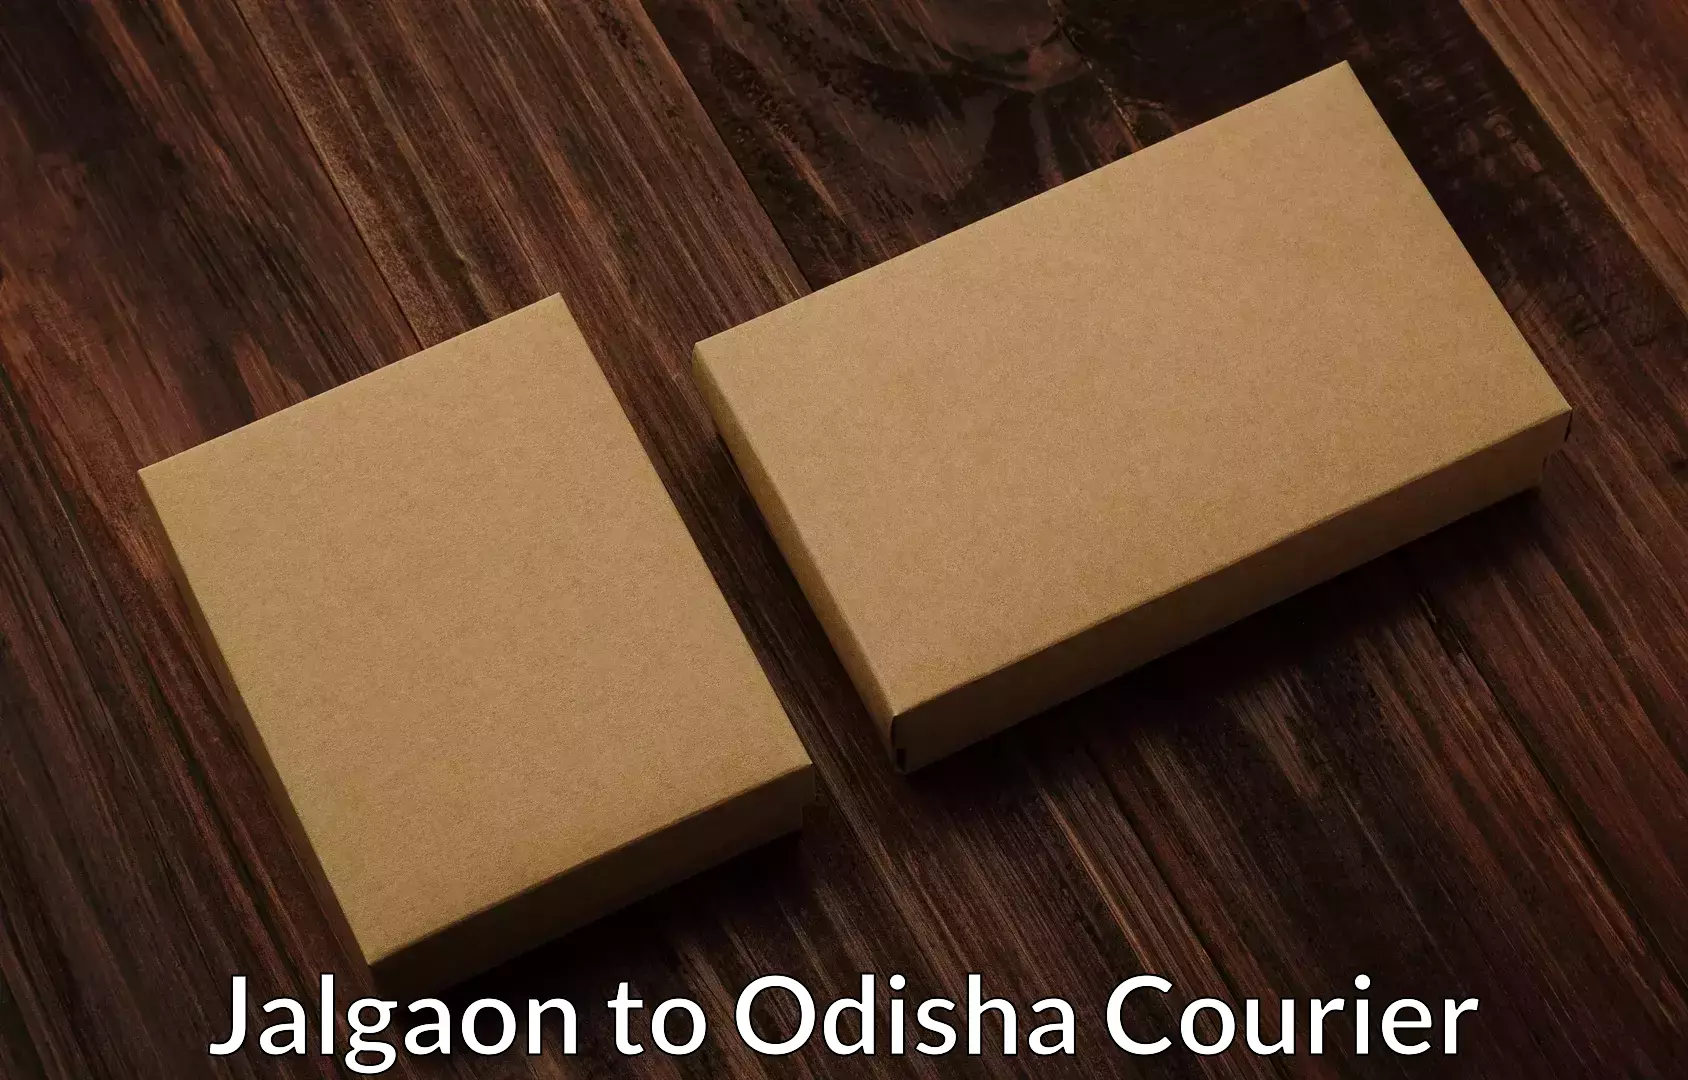 Household transport experts Jalgaon to Odisha